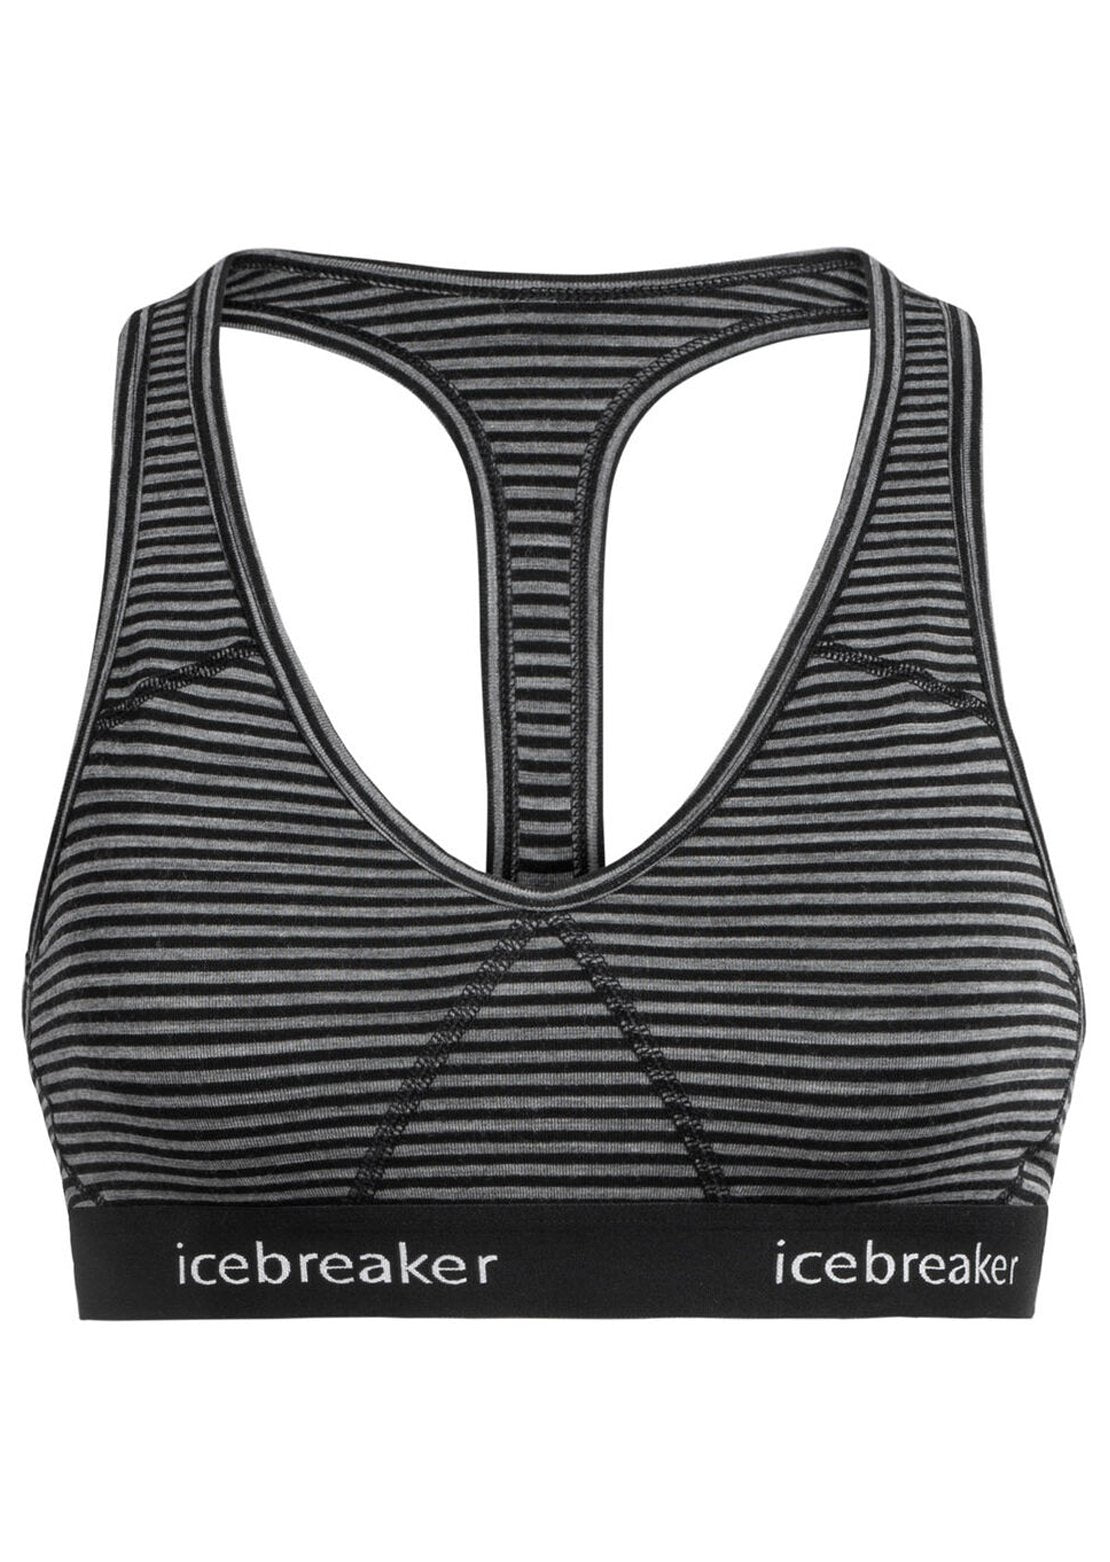 Buy Icebreaker Siren Bra praline from £27.49 (Today) – Best Deals on